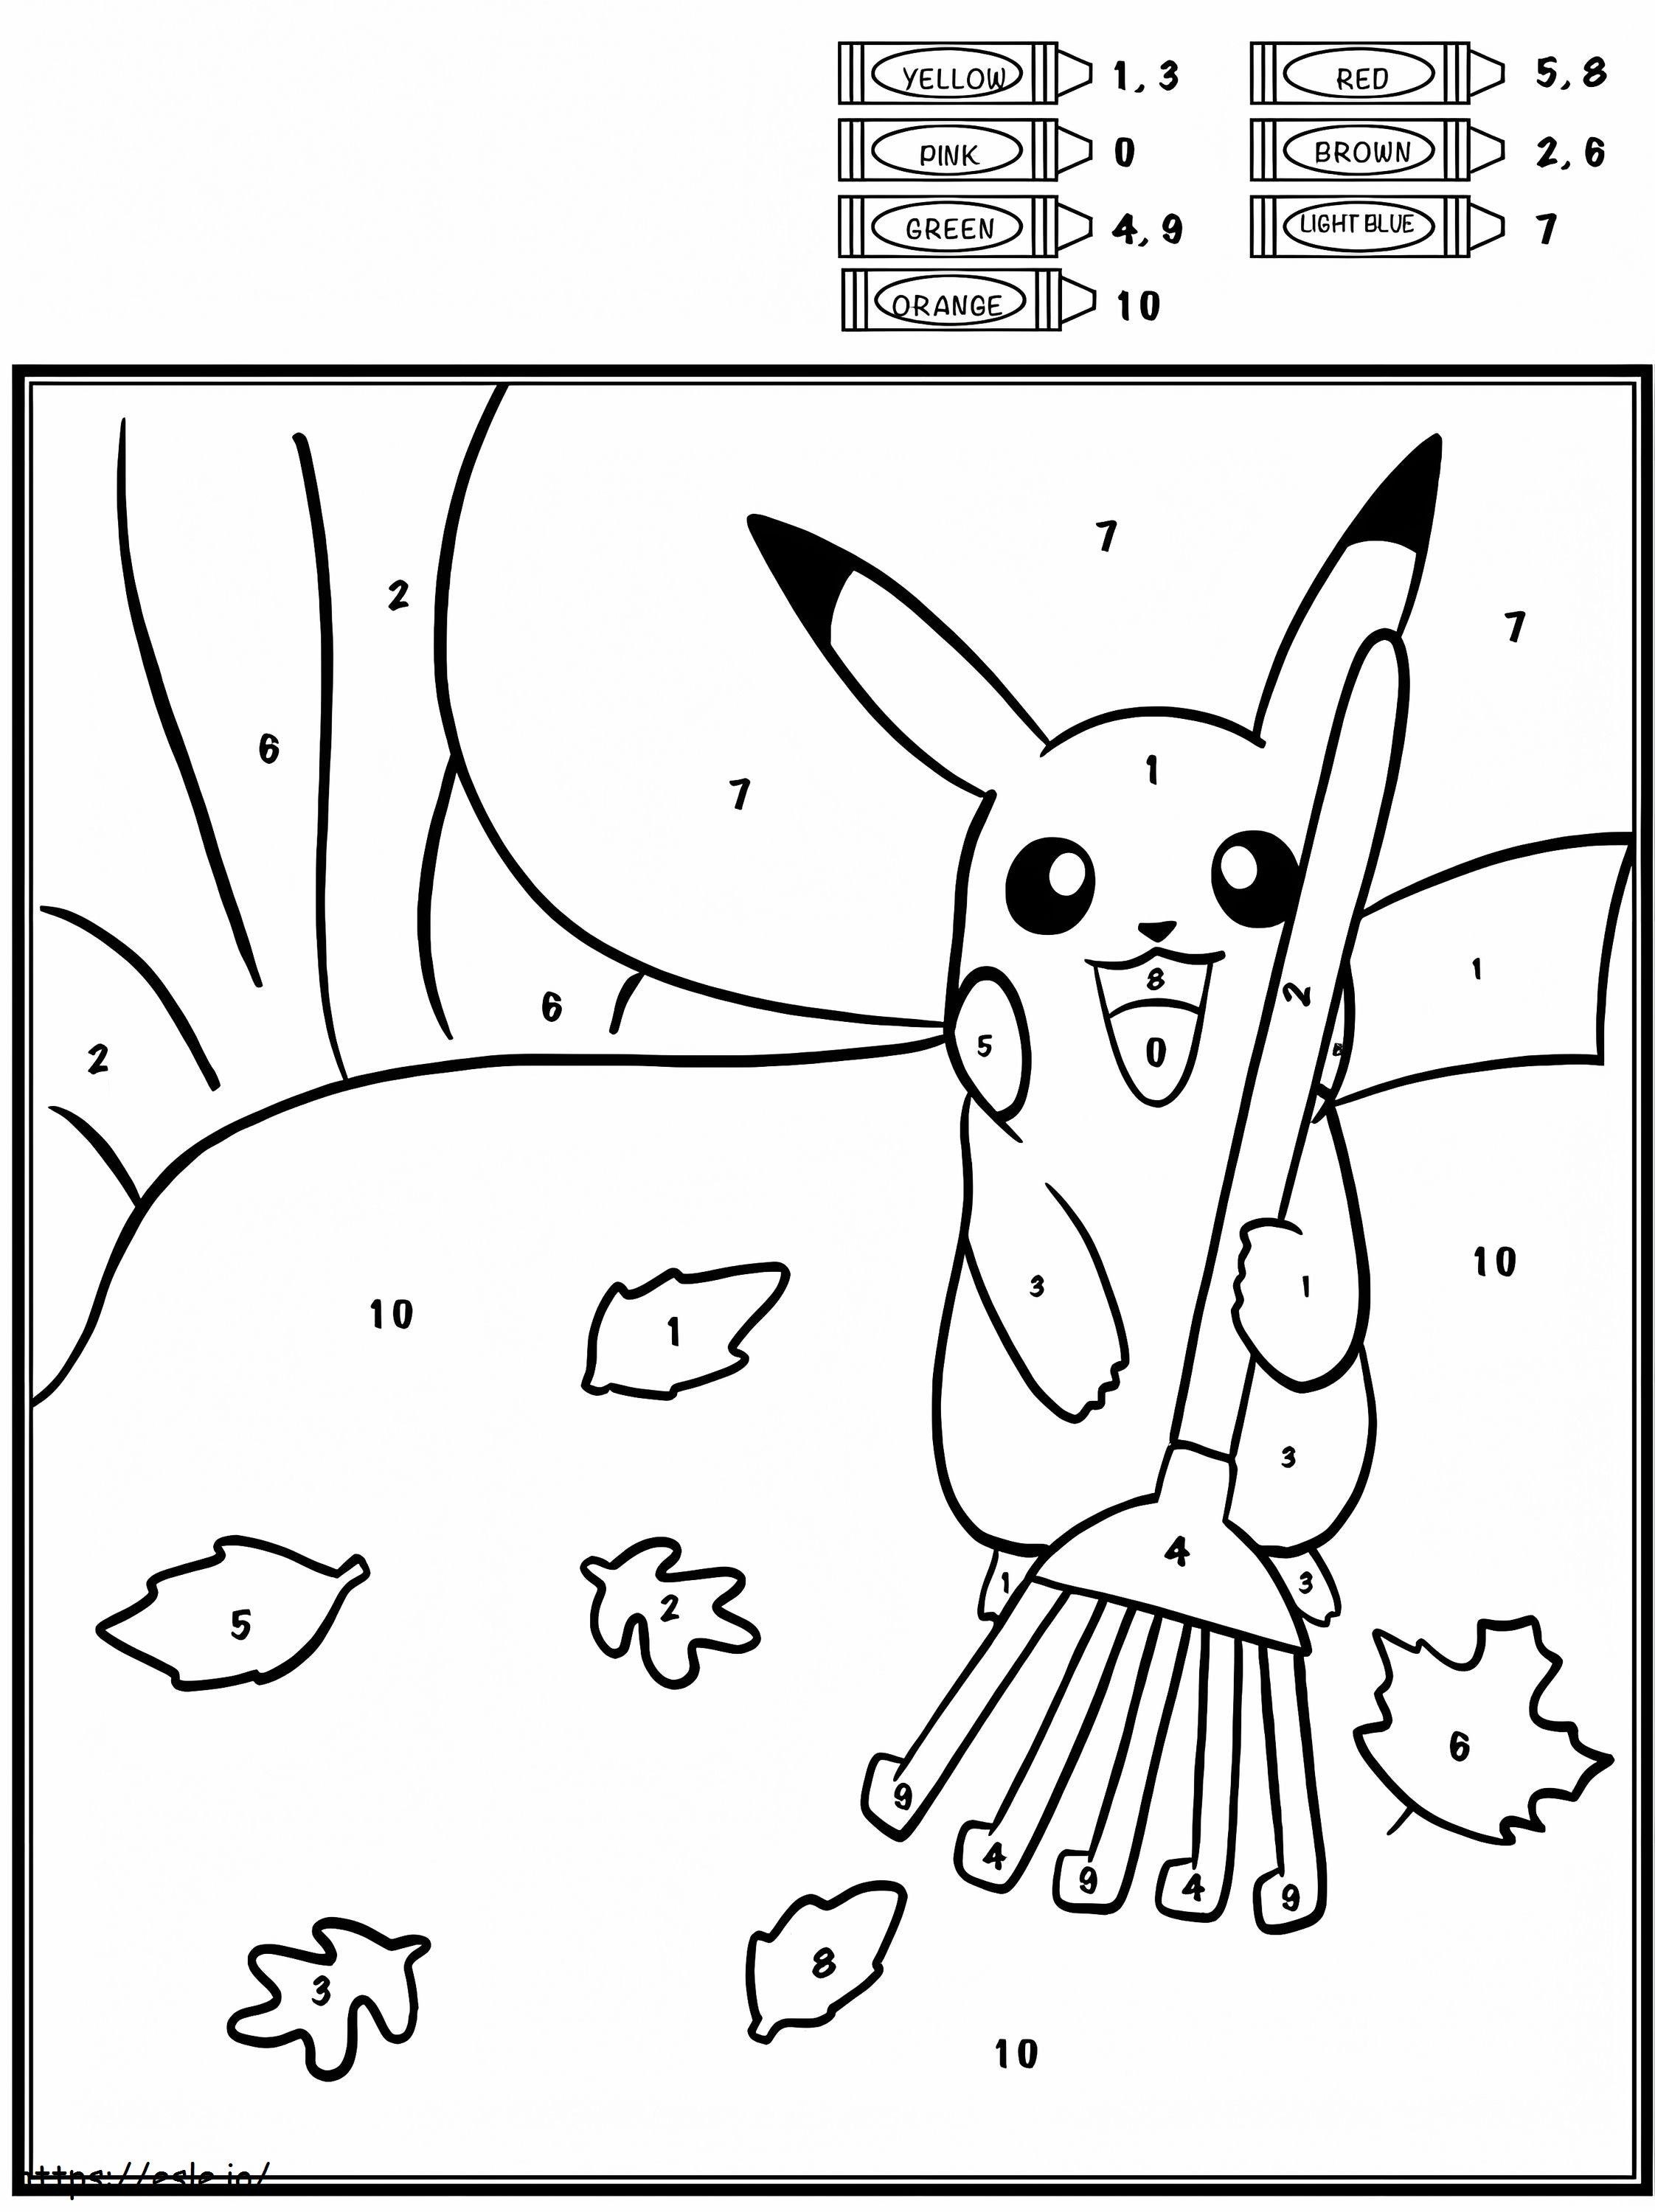 Desenhos do Pikachu para imprimir e colorir  Pikachu coloring page,  Pokemon coloring pages, Pokemon coloring